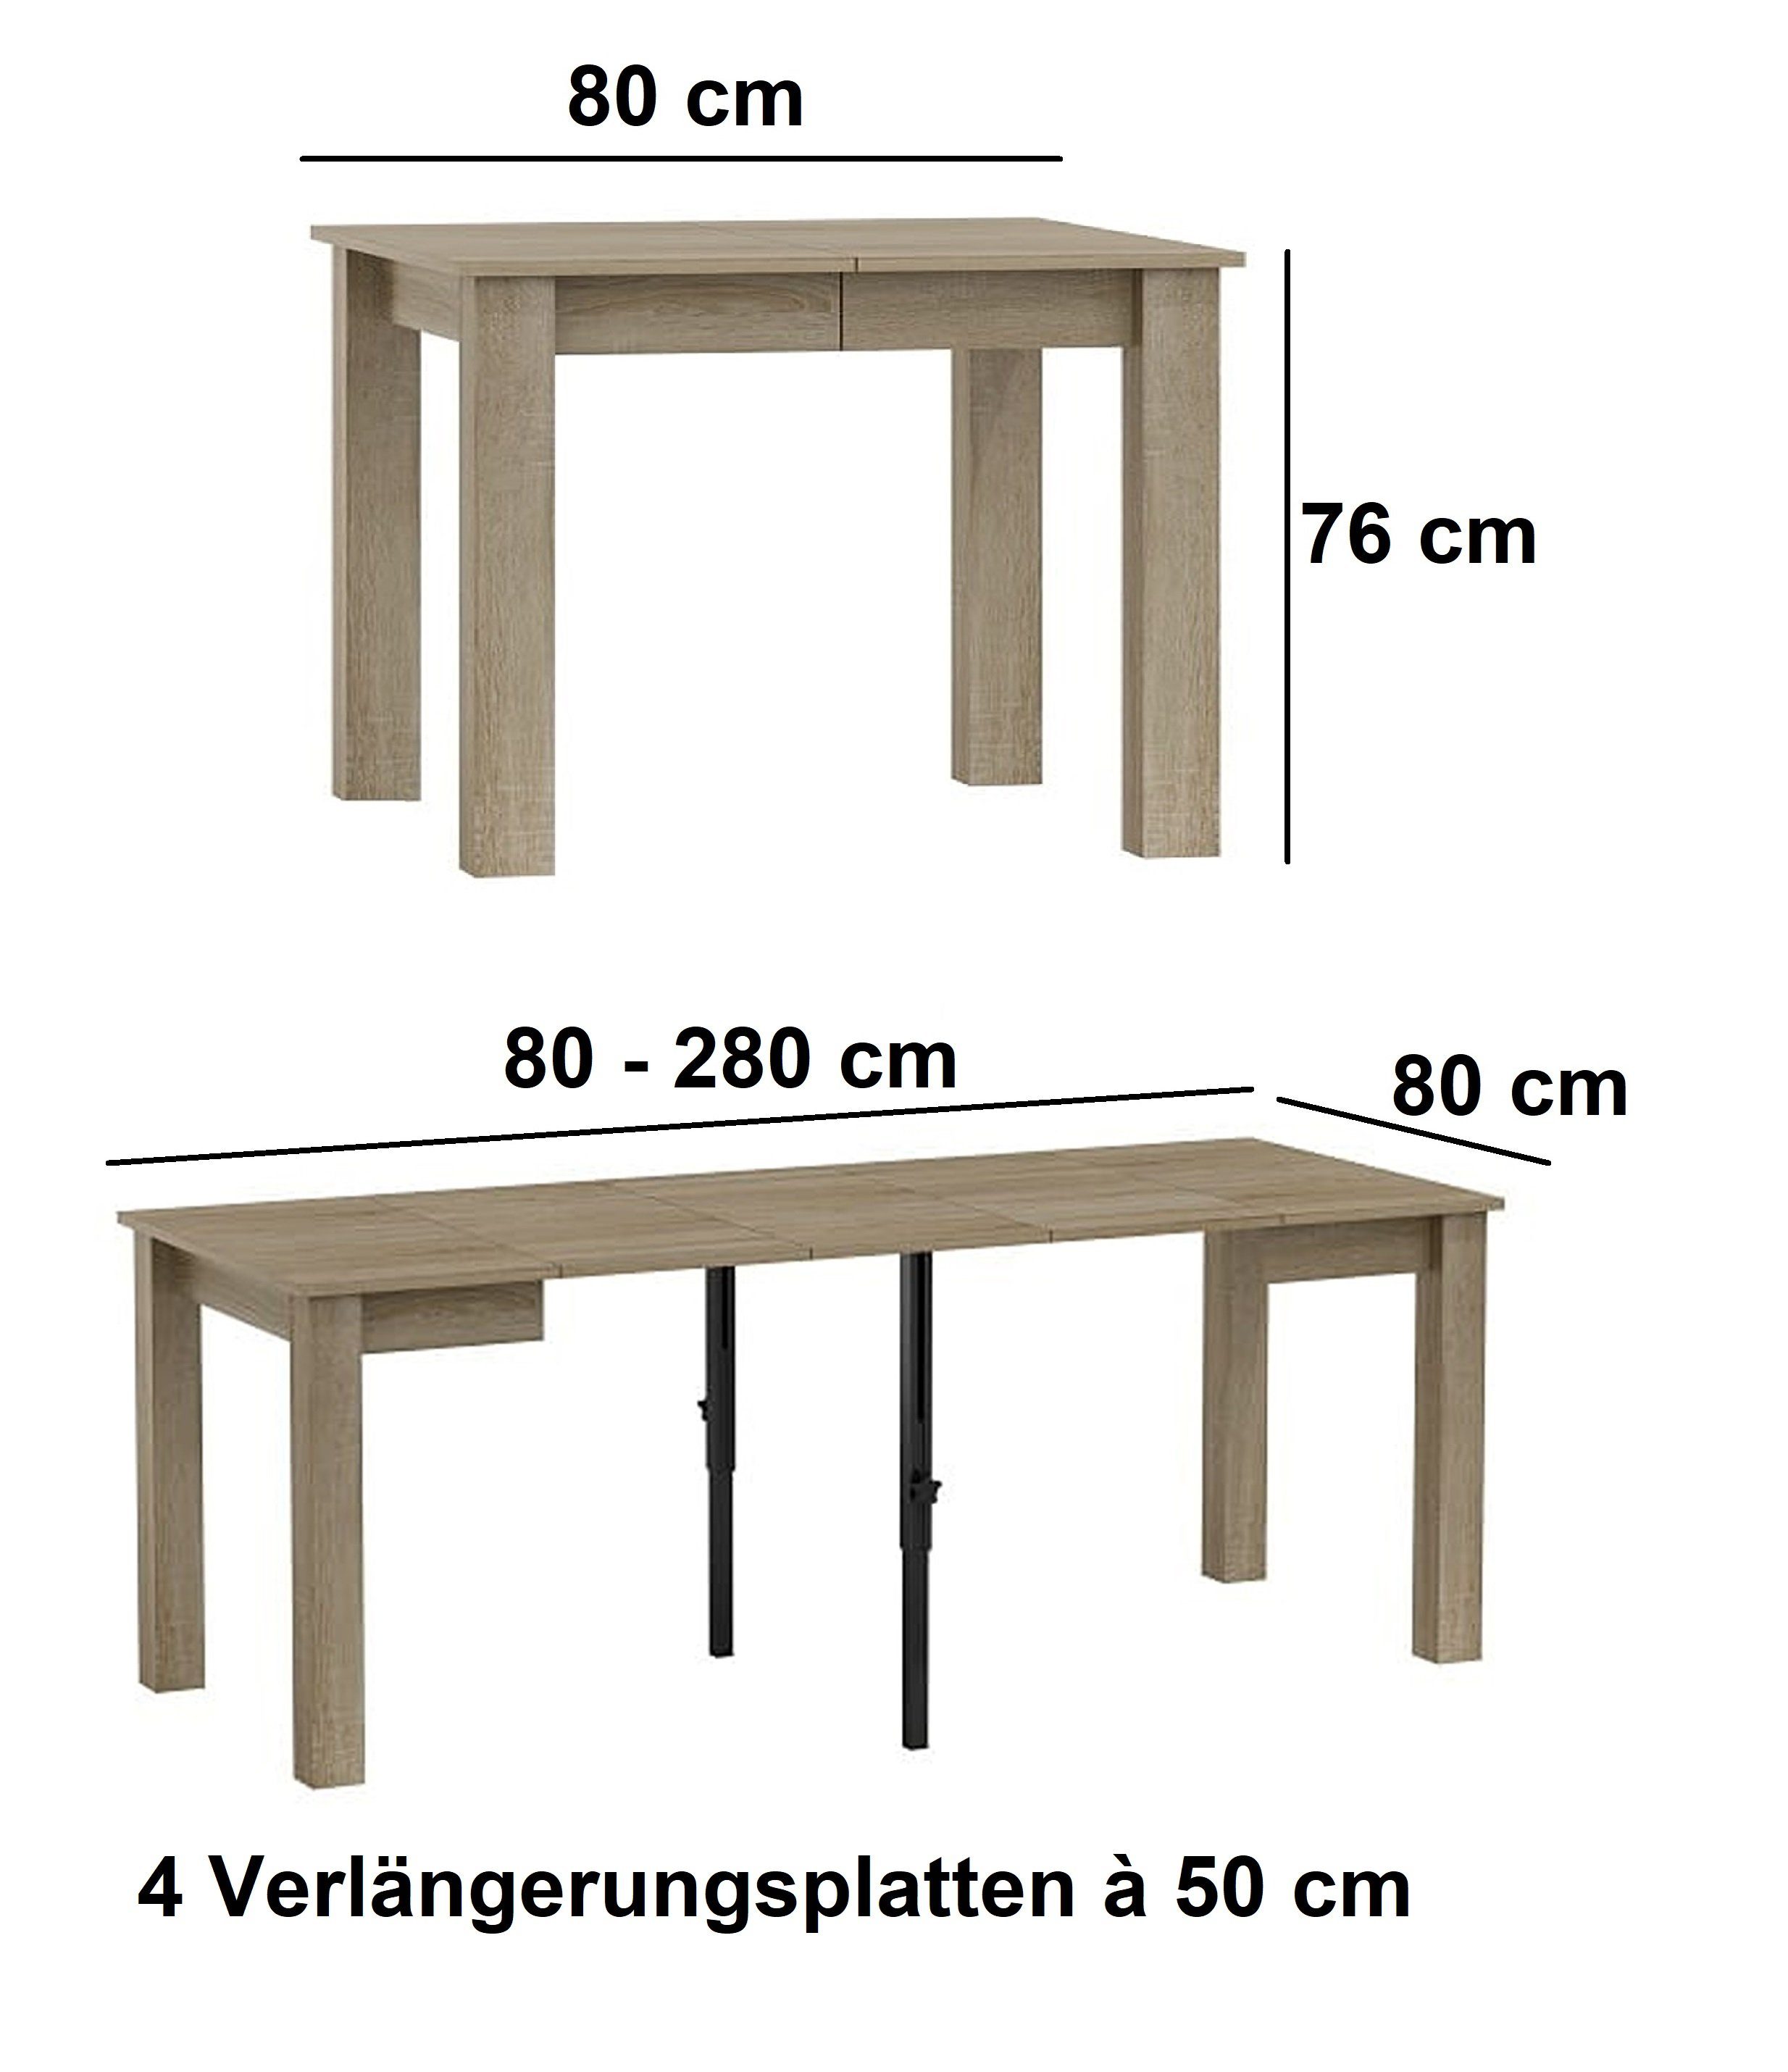 80 DA-444 cm Esszimmer Esstisch Eiche designimpex Esstisch Design ausziehbar bis 280 Sonoma Tisch